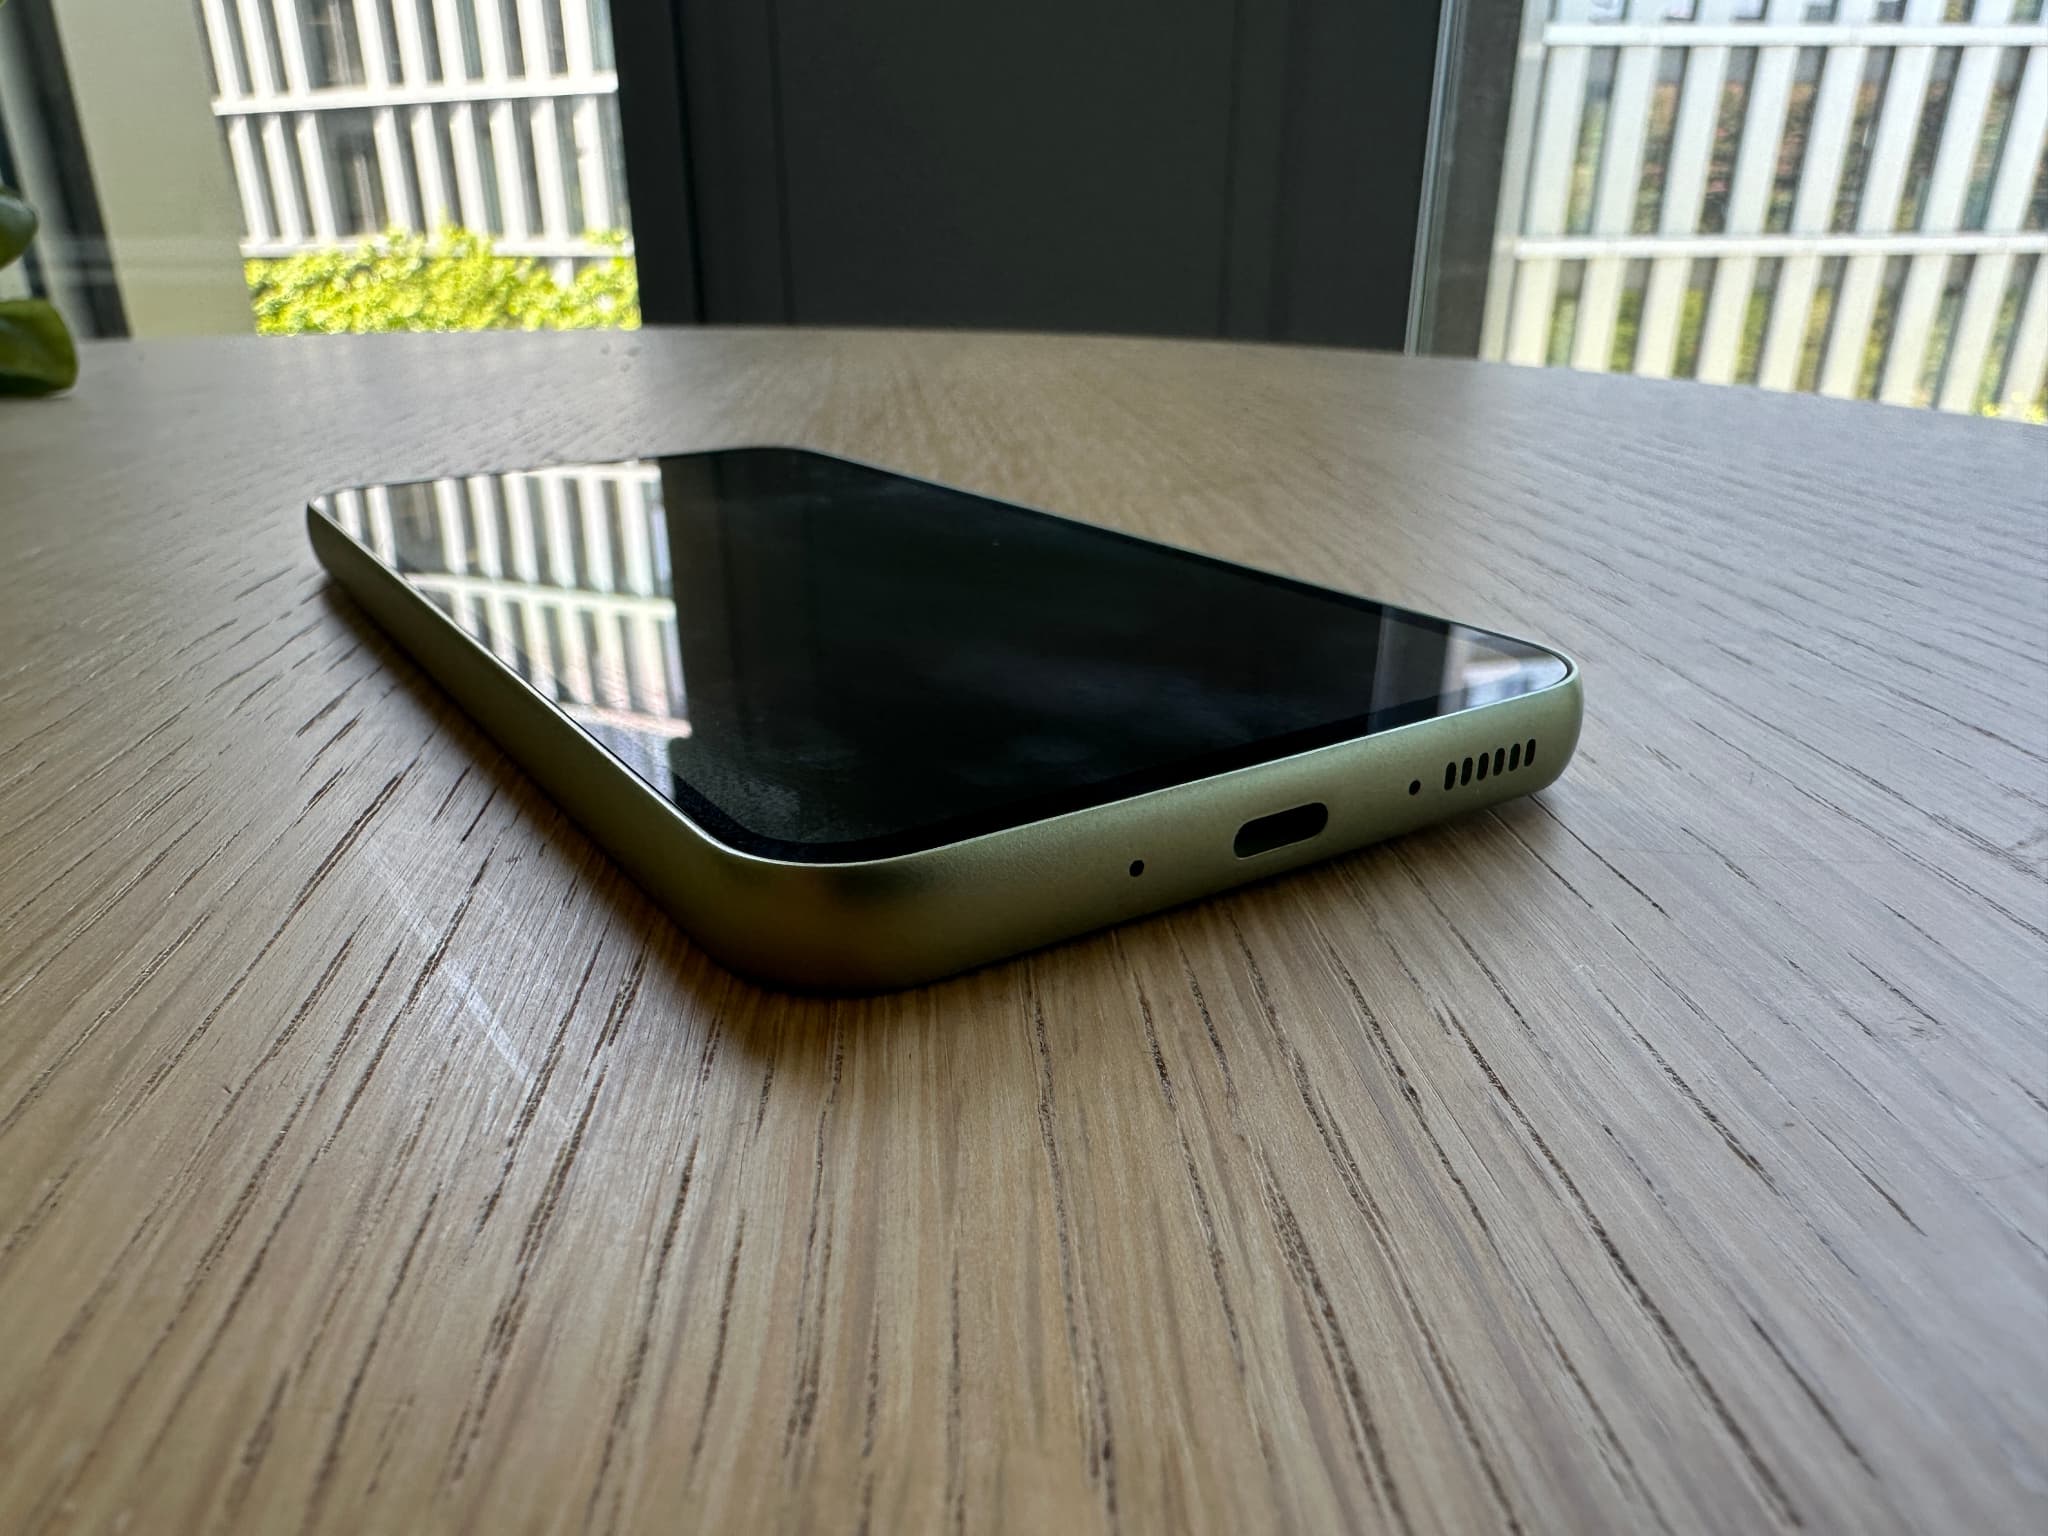 Test du Samsung Galaxy A54 5G : une vraie montée en gamme